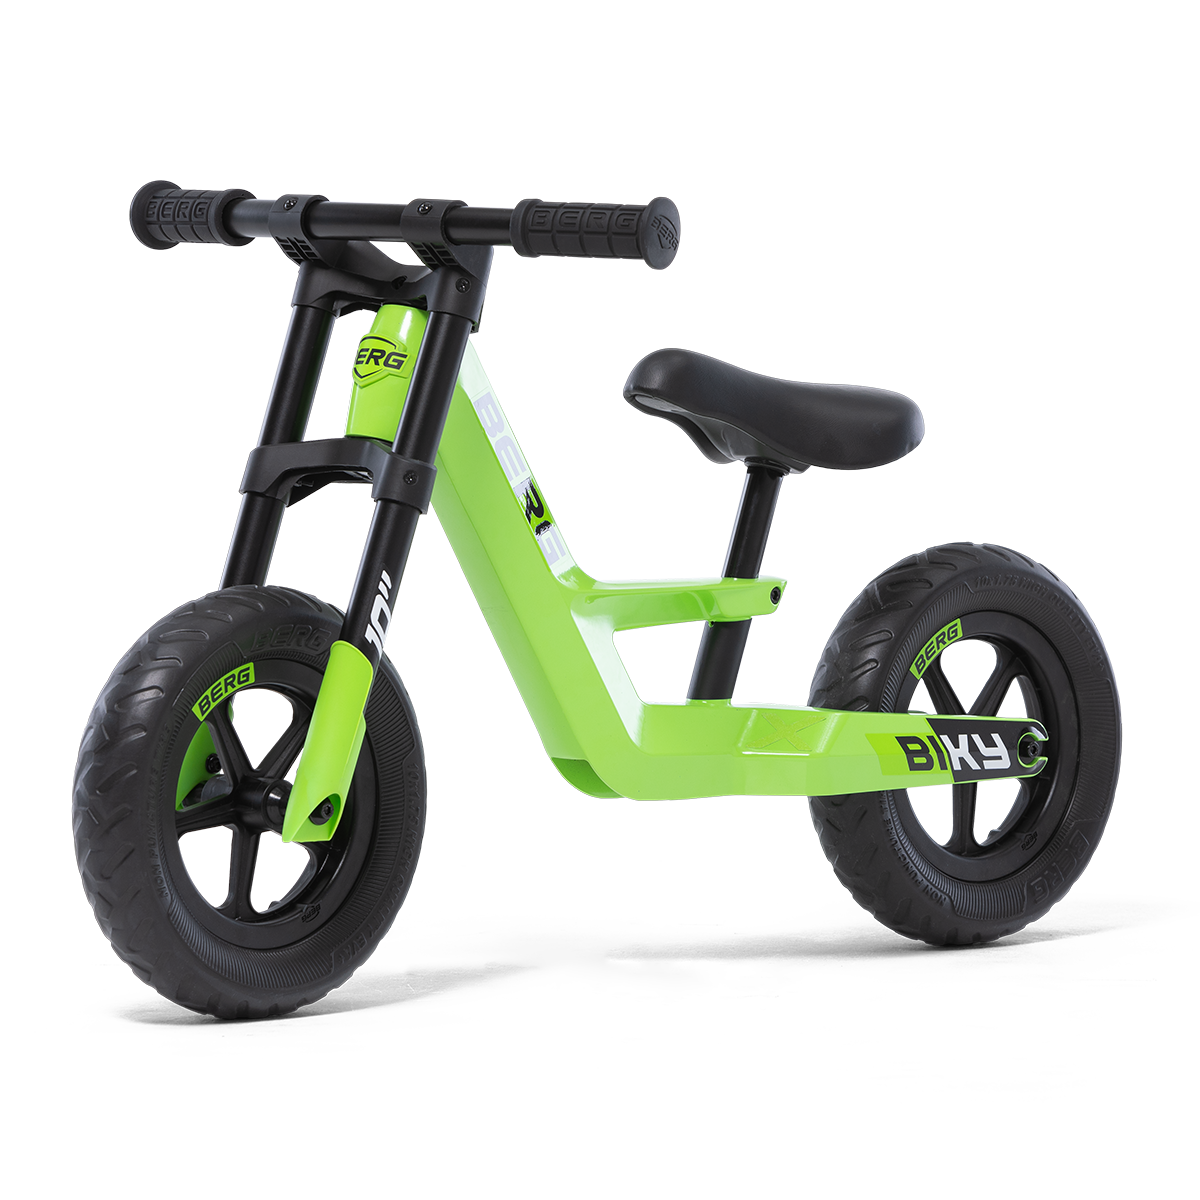 BERG Biky Mini Green